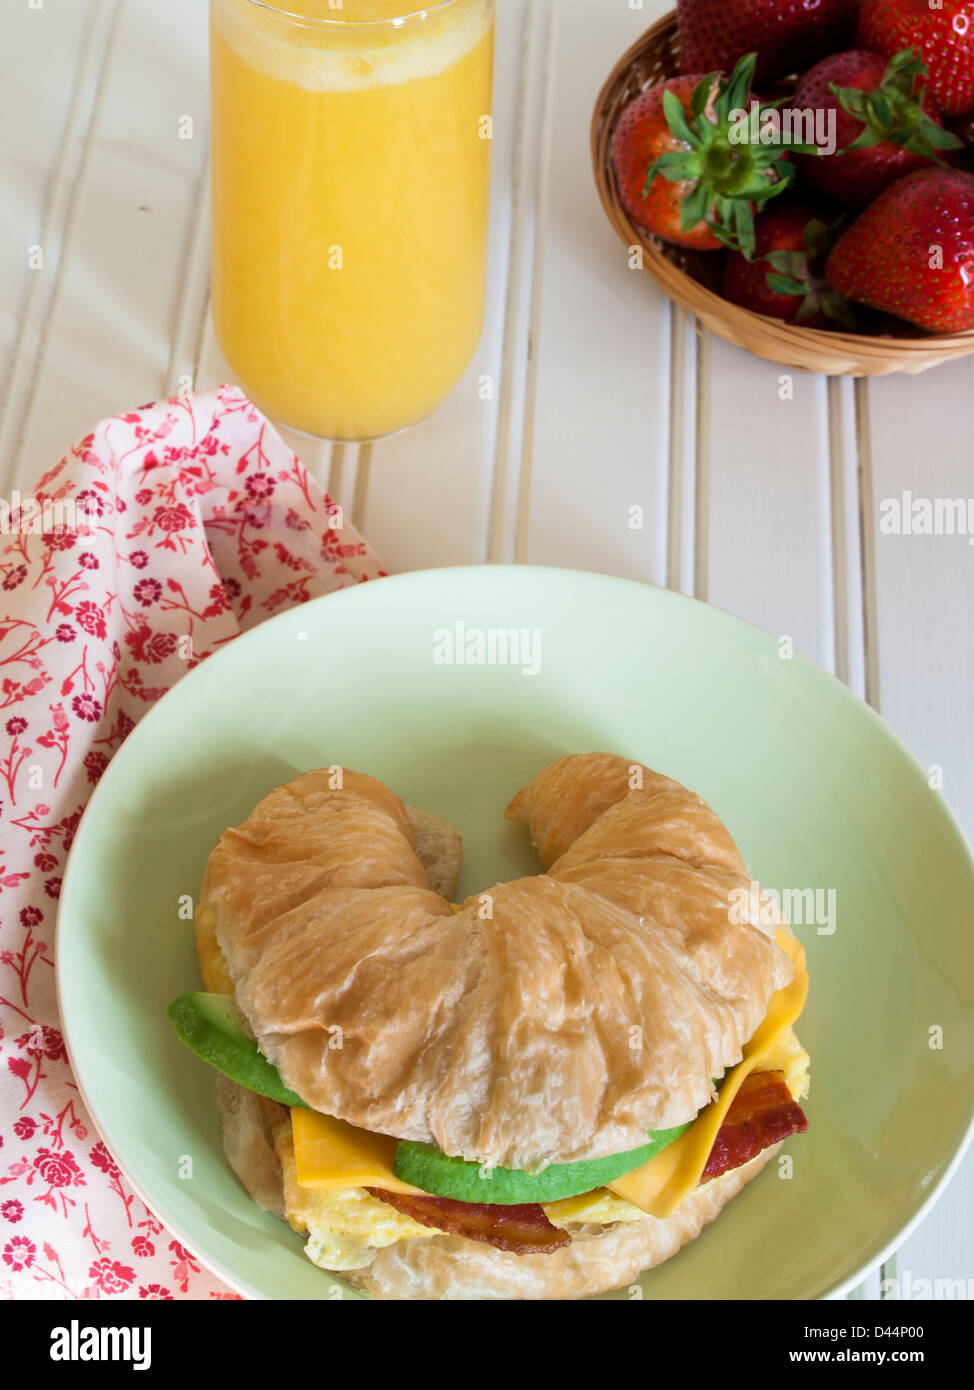 Croissant sándwich de desayuno con zumo de naranja en el desayuno. Foto de stock